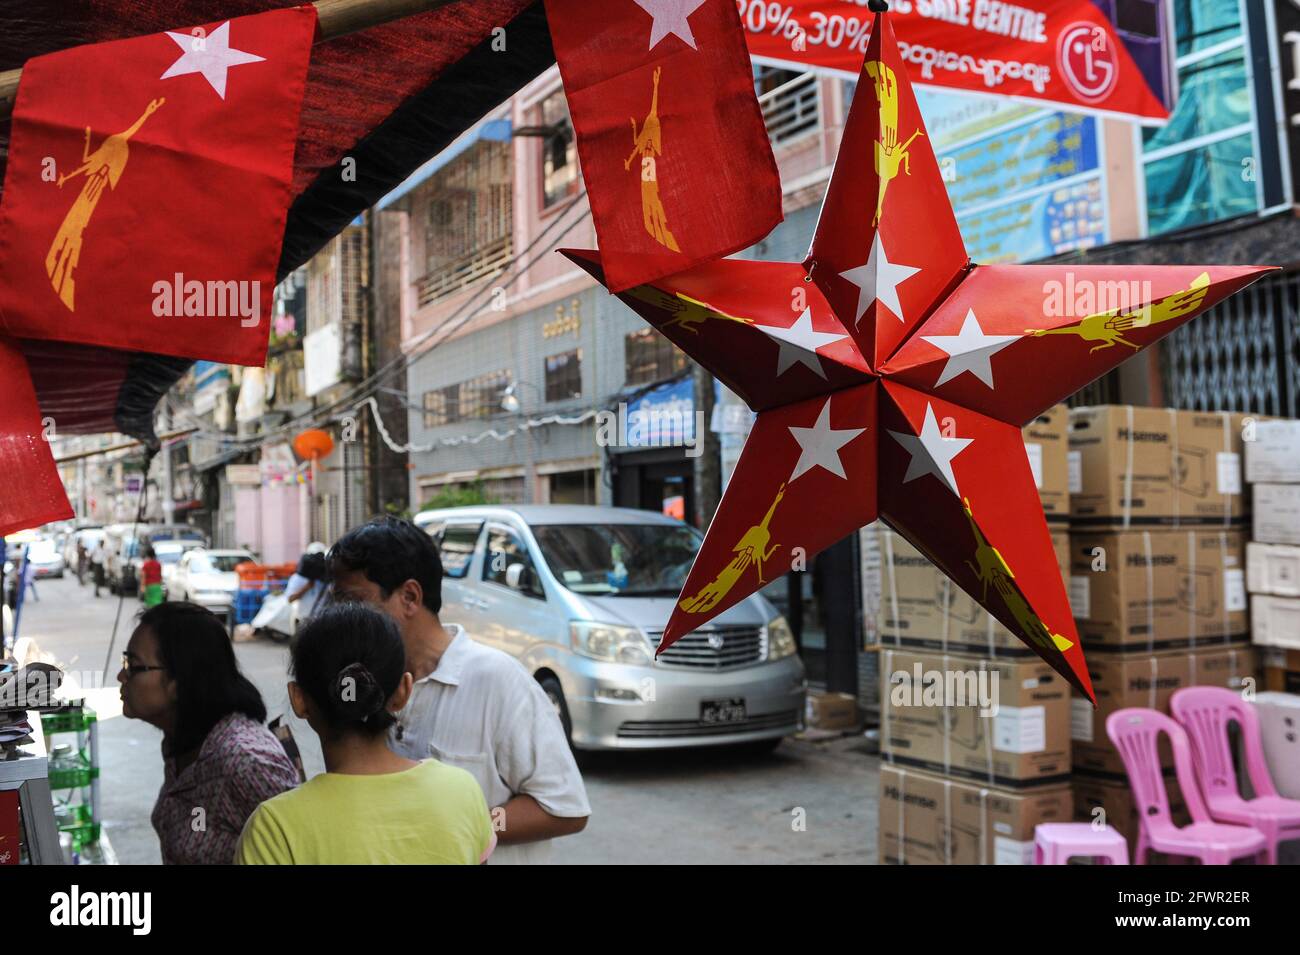 31.10.2015, Yangon, Myanmar, Asia - una stella rossa in cartone con il logo del partito NLD (Lega Nazionale per la democrazia) è appesa in un negozio. Foto Stock